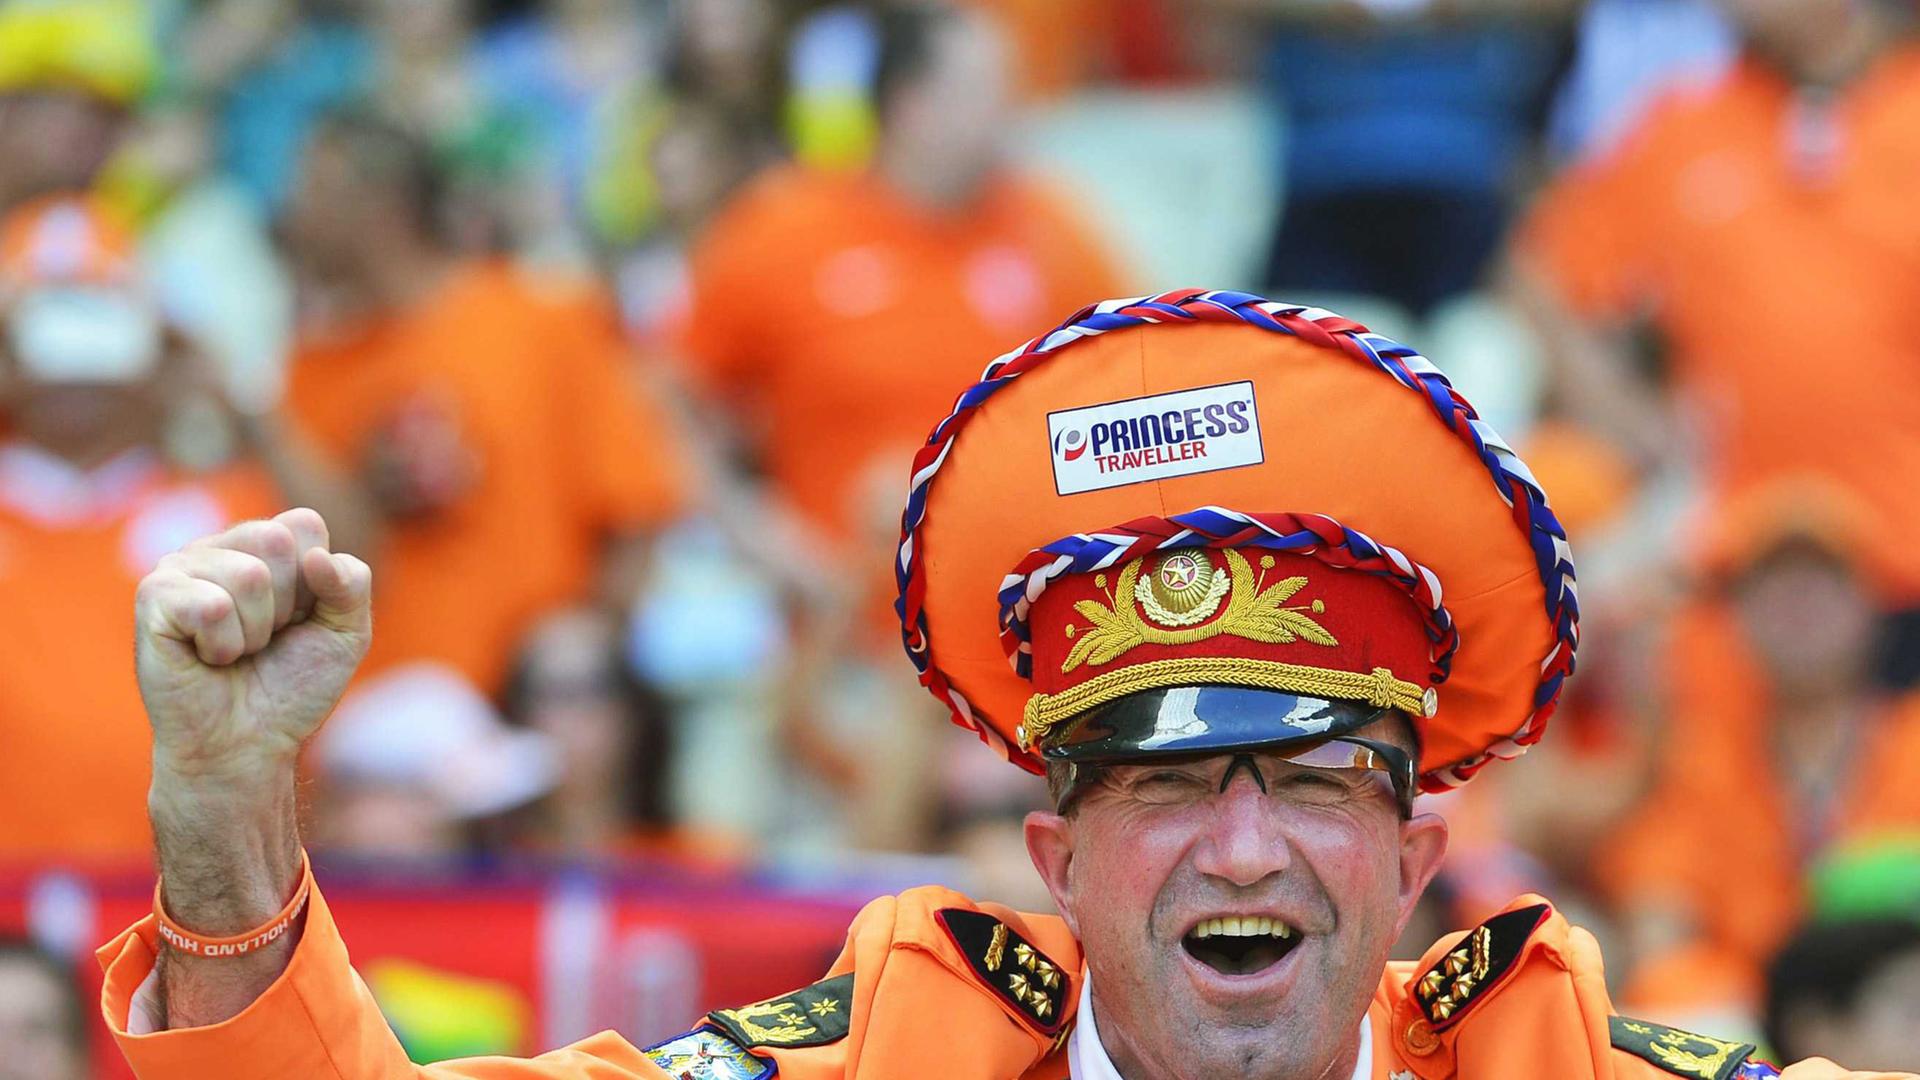 Niederländischer Fußballfan bei der Fußball-WM in Brasilien - mit orangener Mütze und Jacket und einer Fliege in den Farben der niederländischen Flagge. Er ballt siegesgewiss eine Faust.